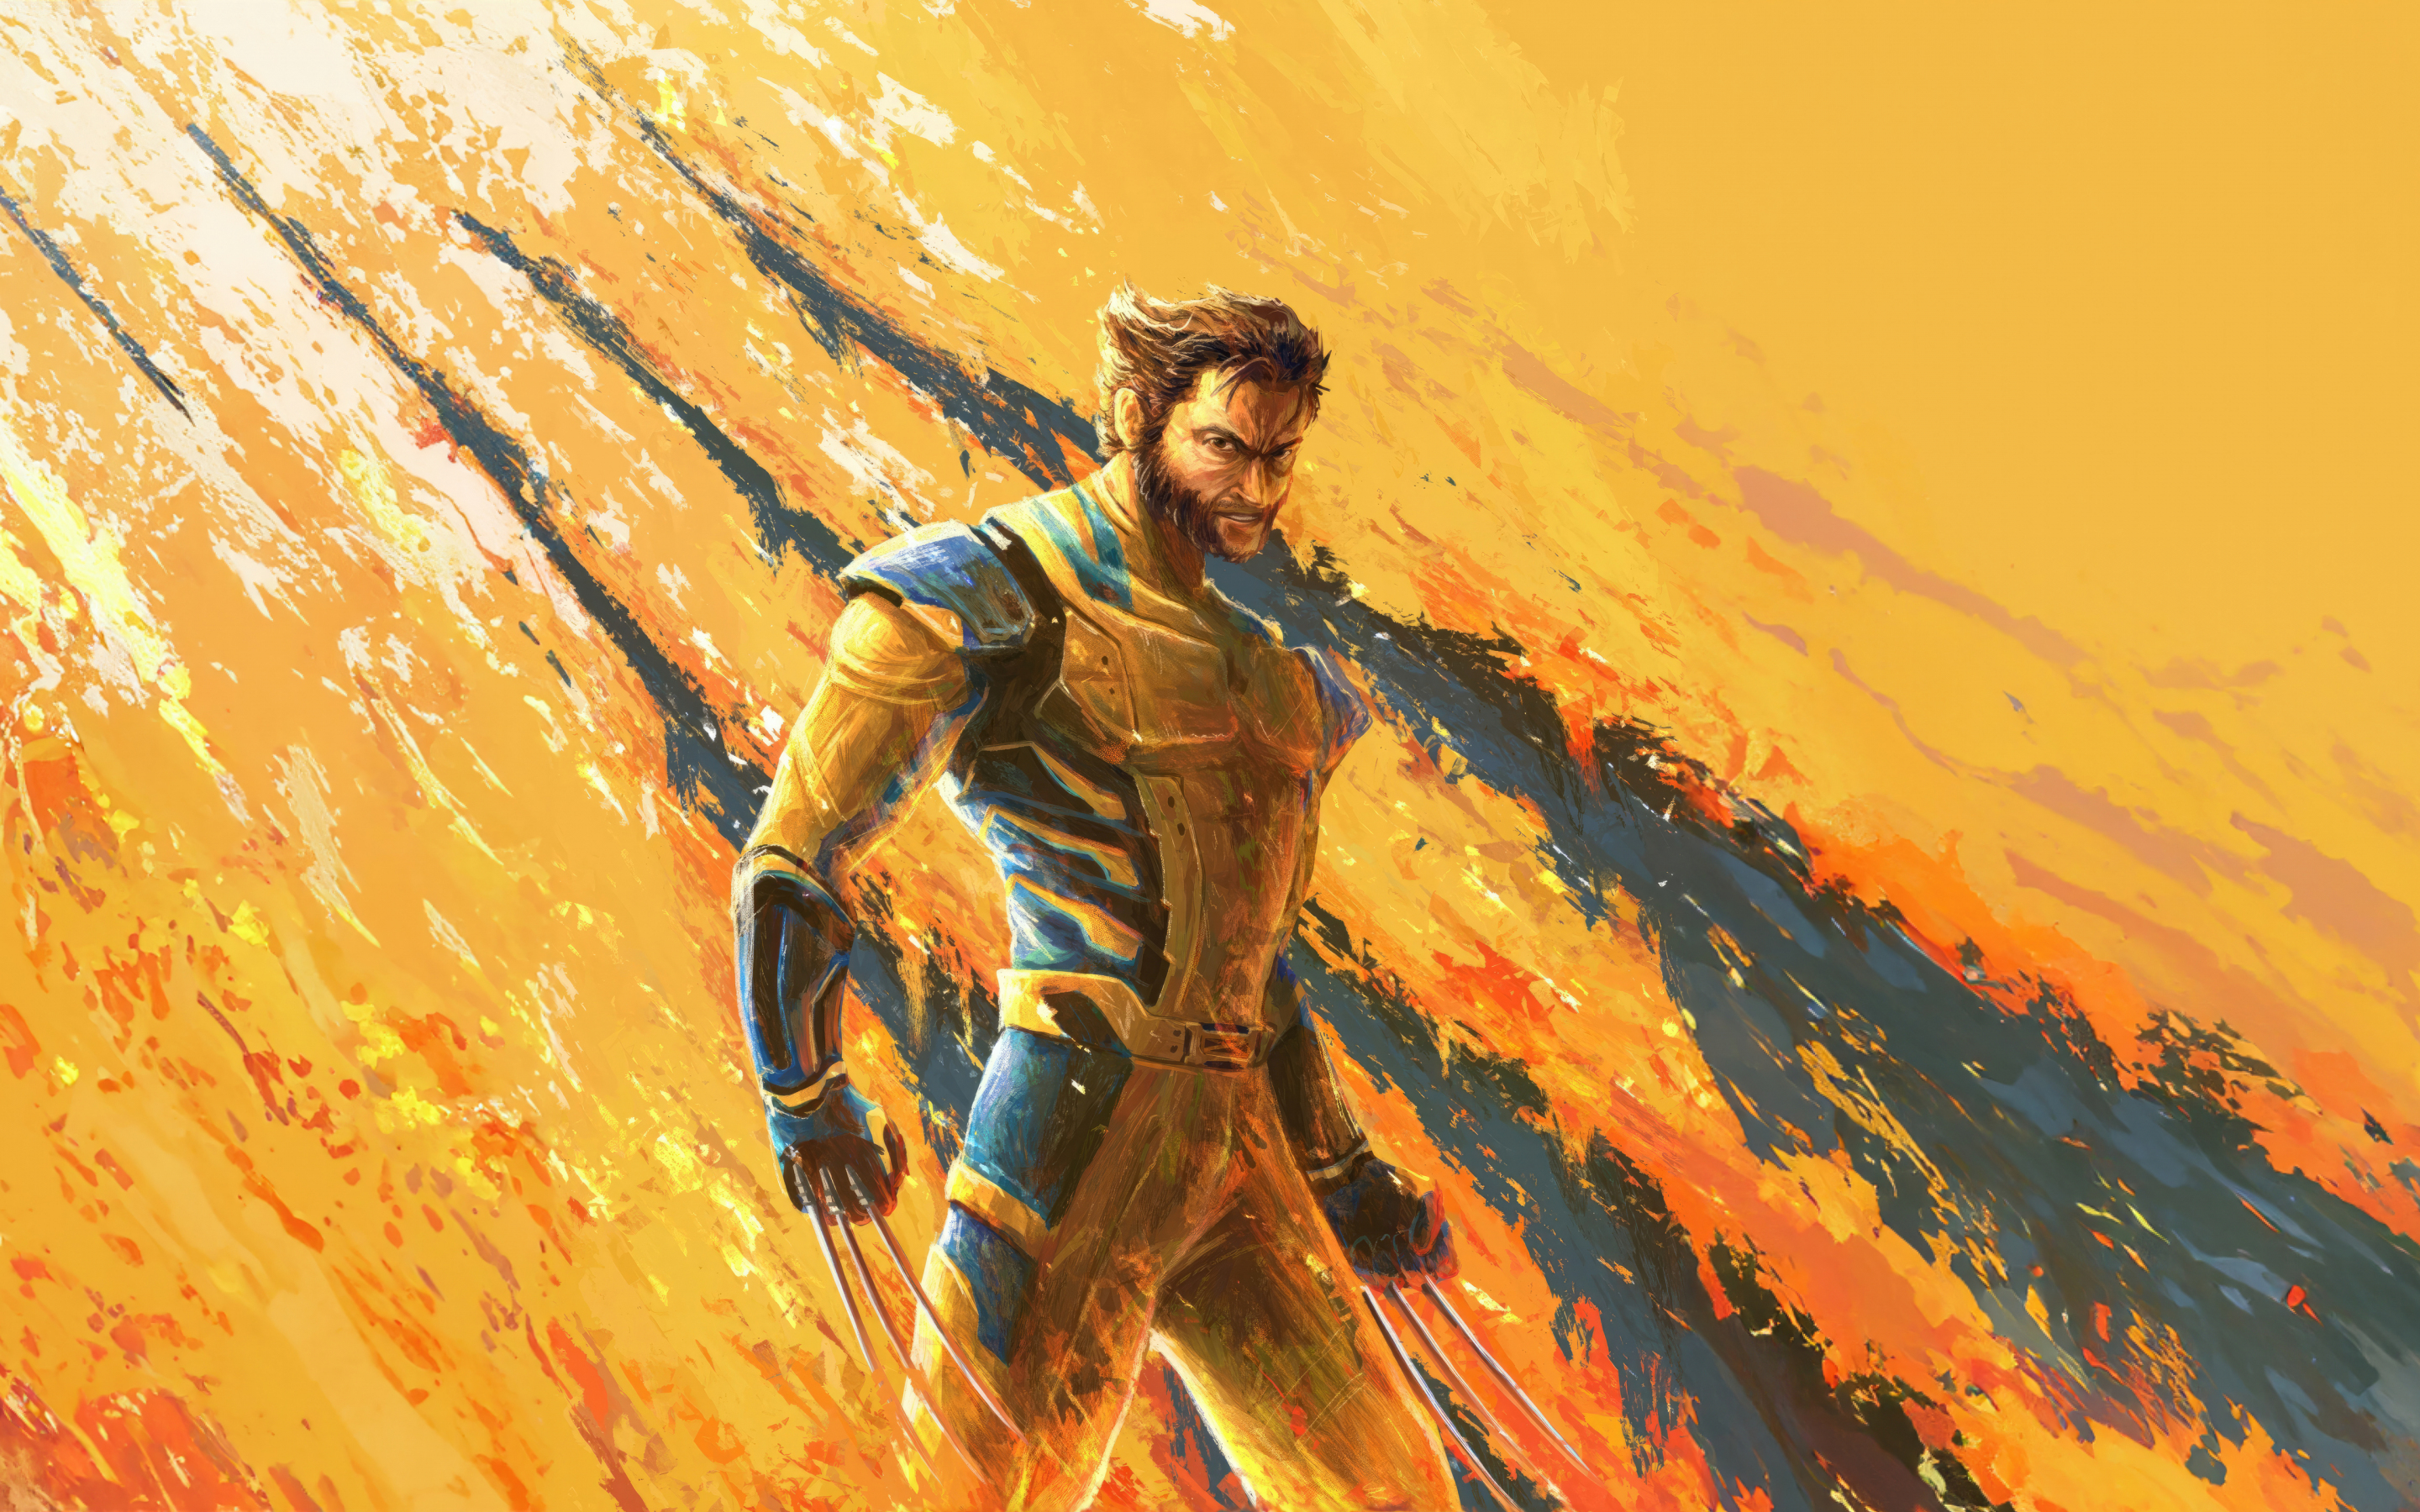 Wolverine in 2023 movie, Deadpool 3, fan art, 2880x1800 wallpaper